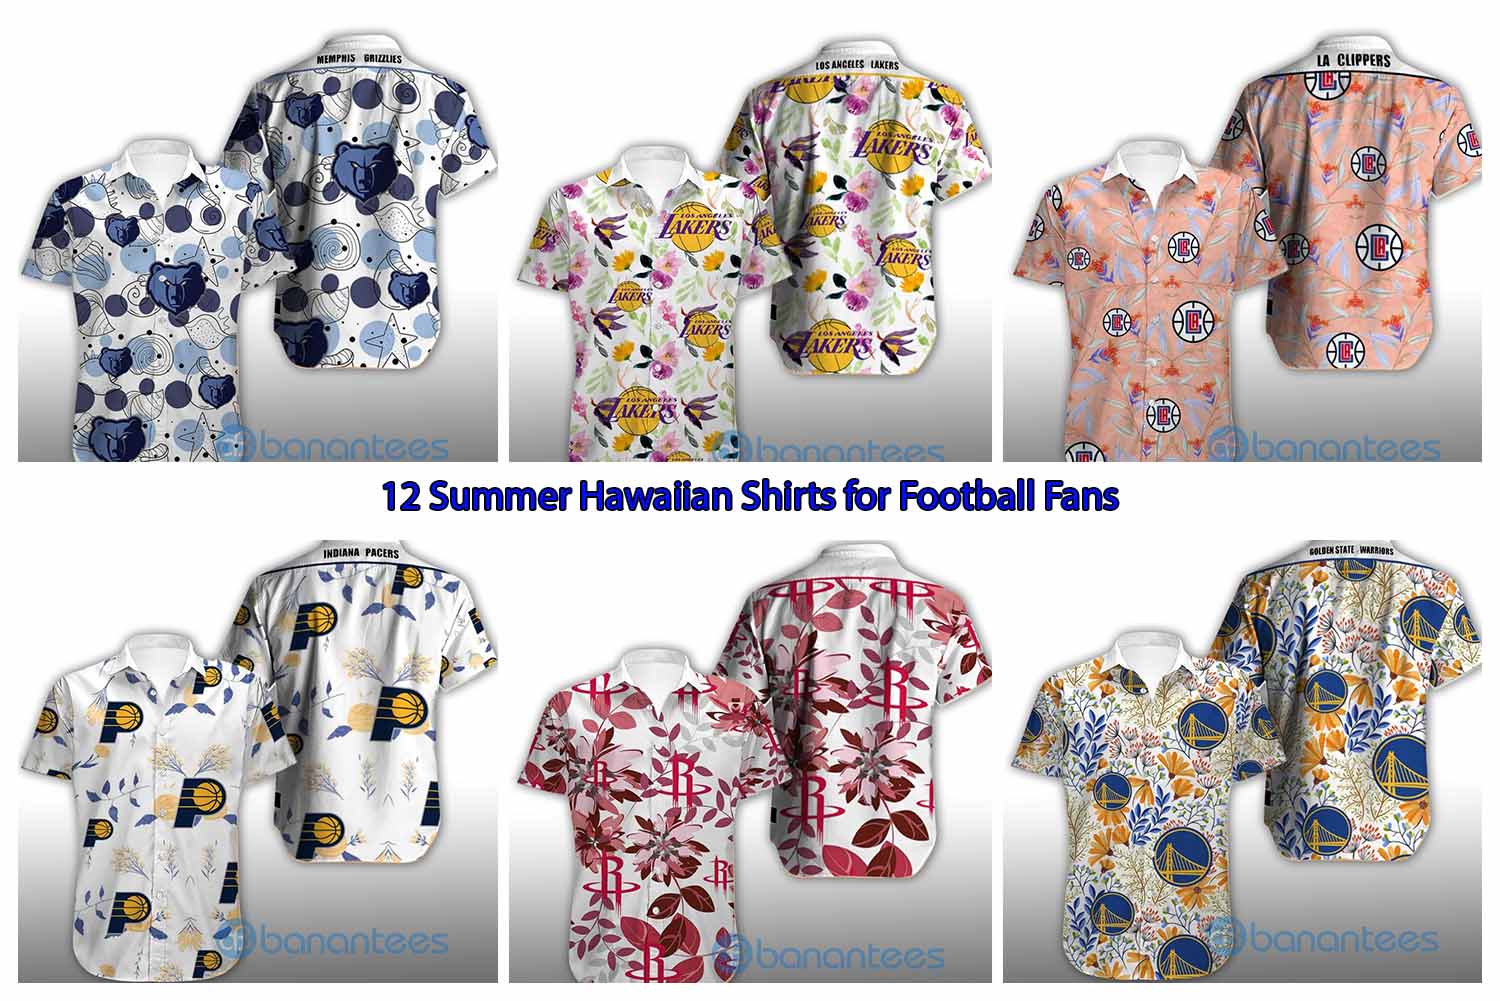 12 Summer Hawaiian Shirts for Football Fans